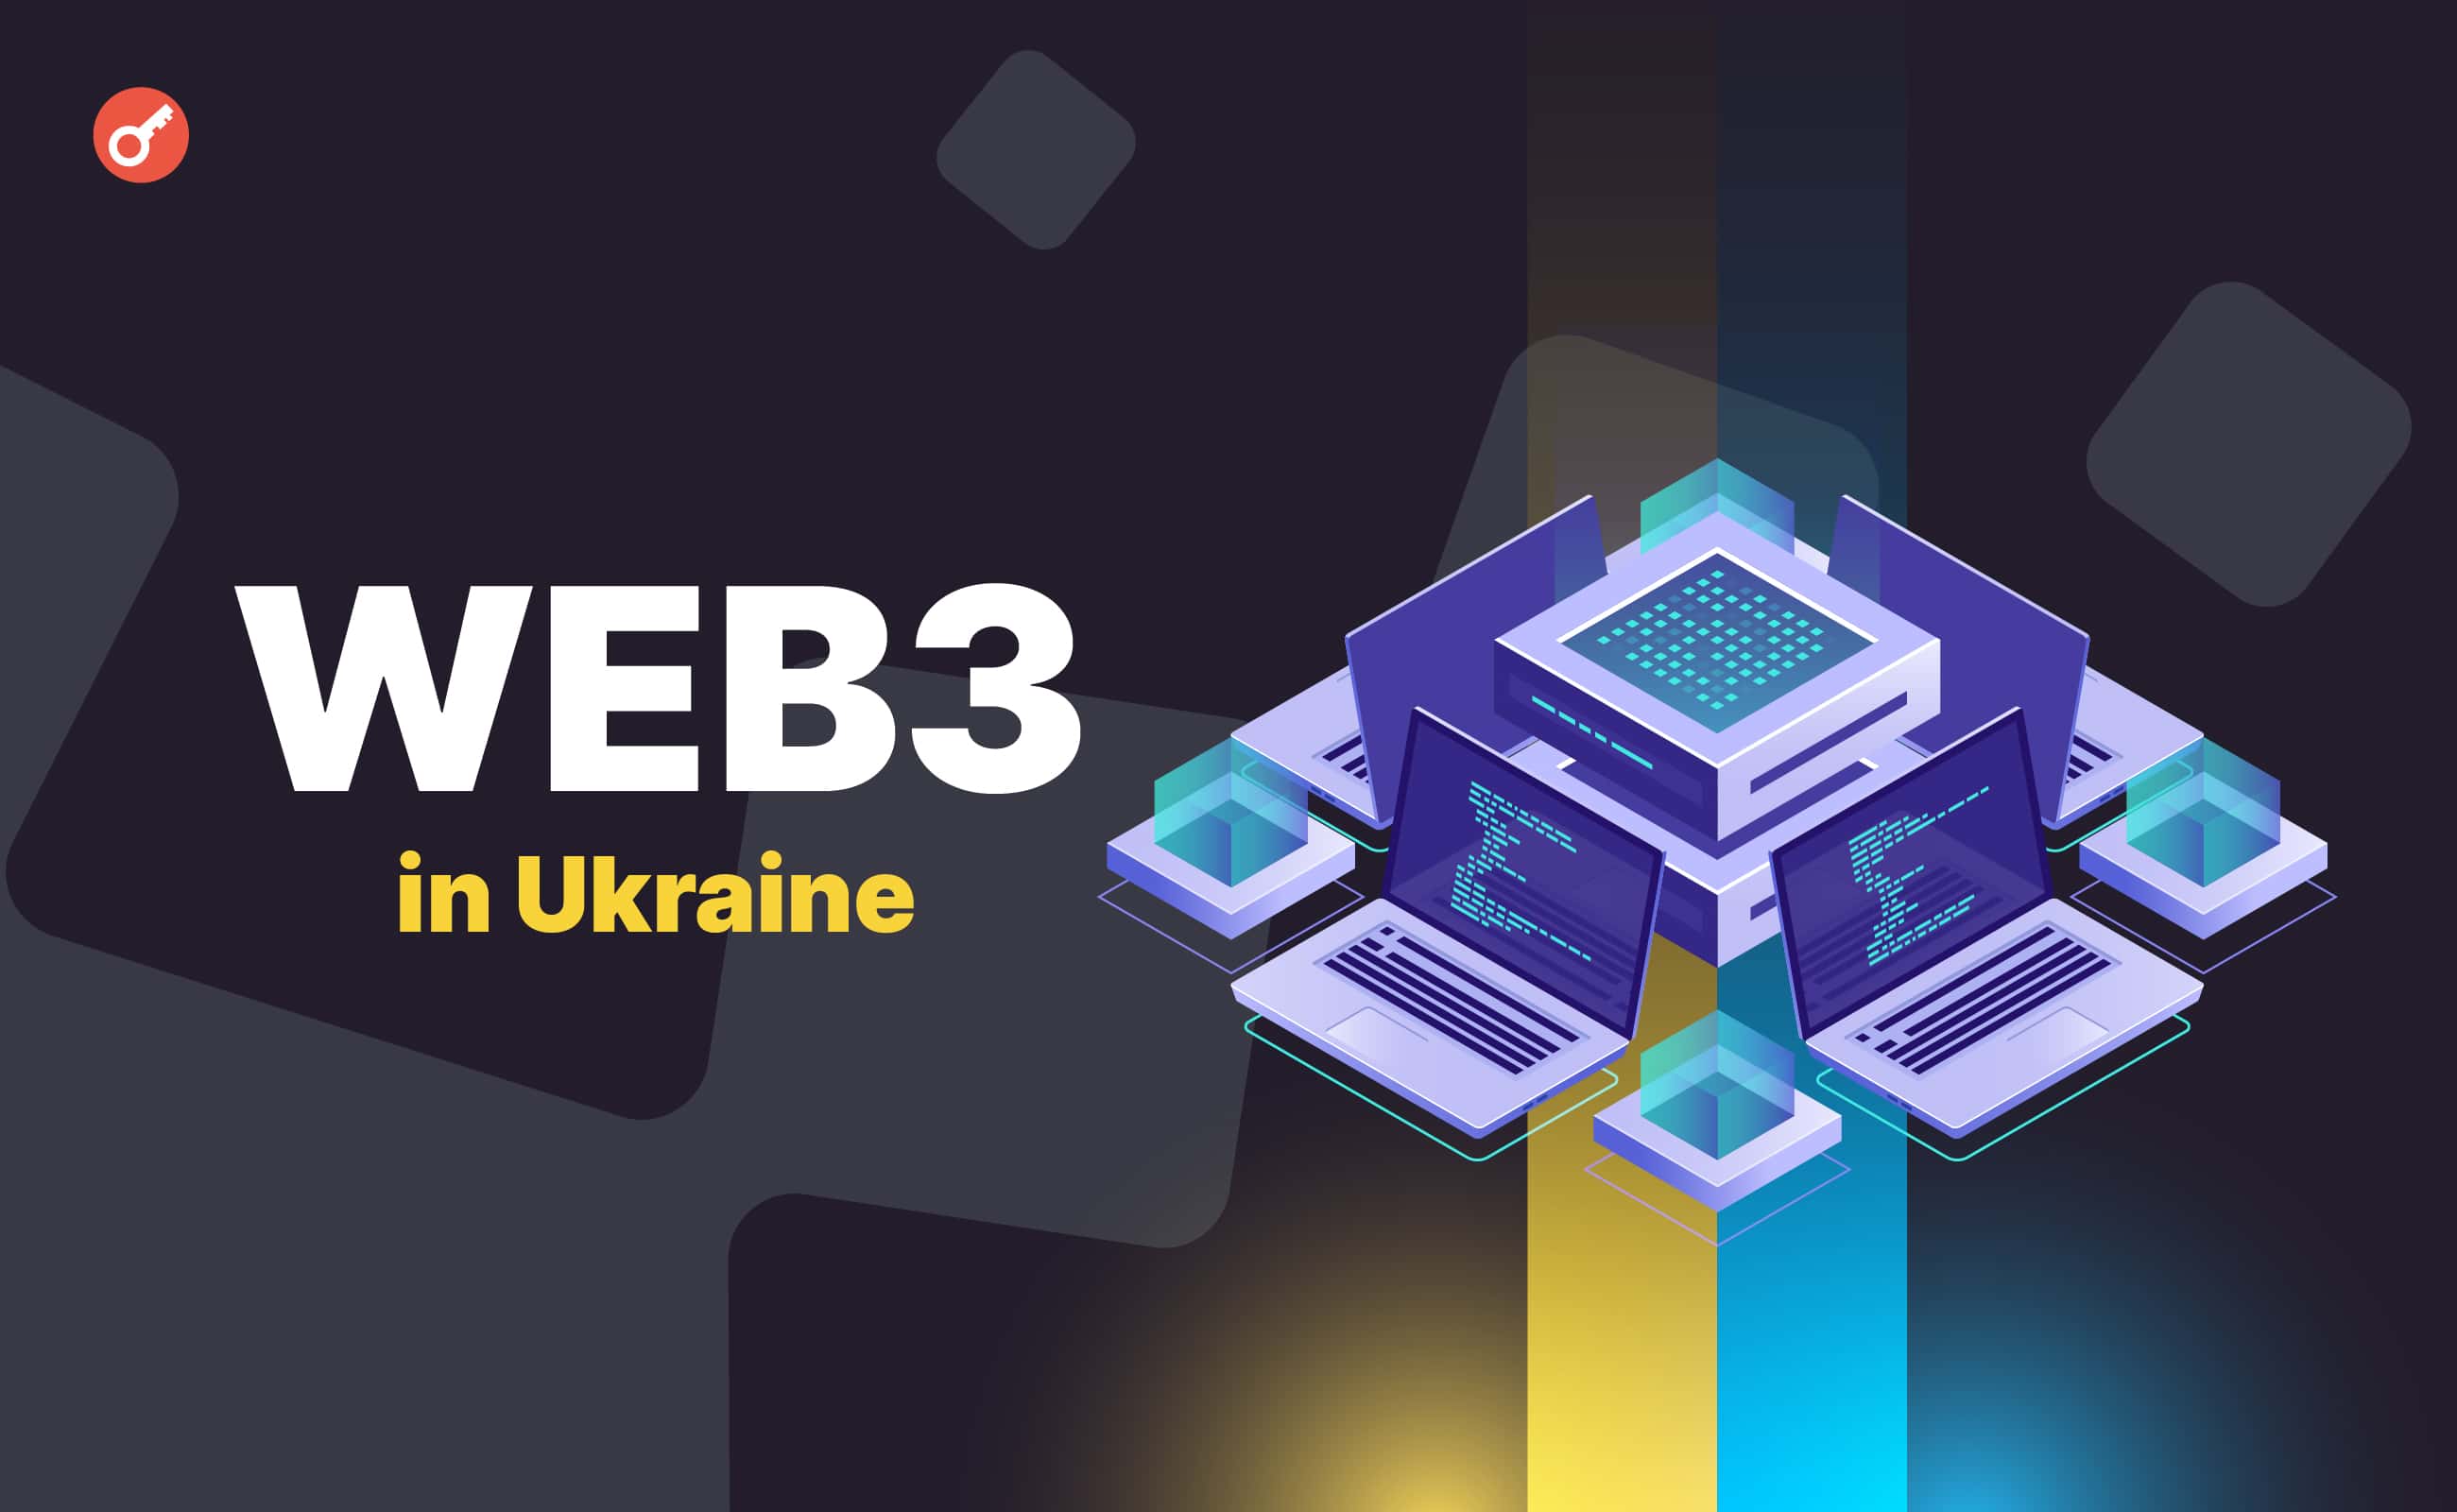 В Украине представили исследование проблем и перспектив Web3-индустрии. Заглавный коллаж новости.